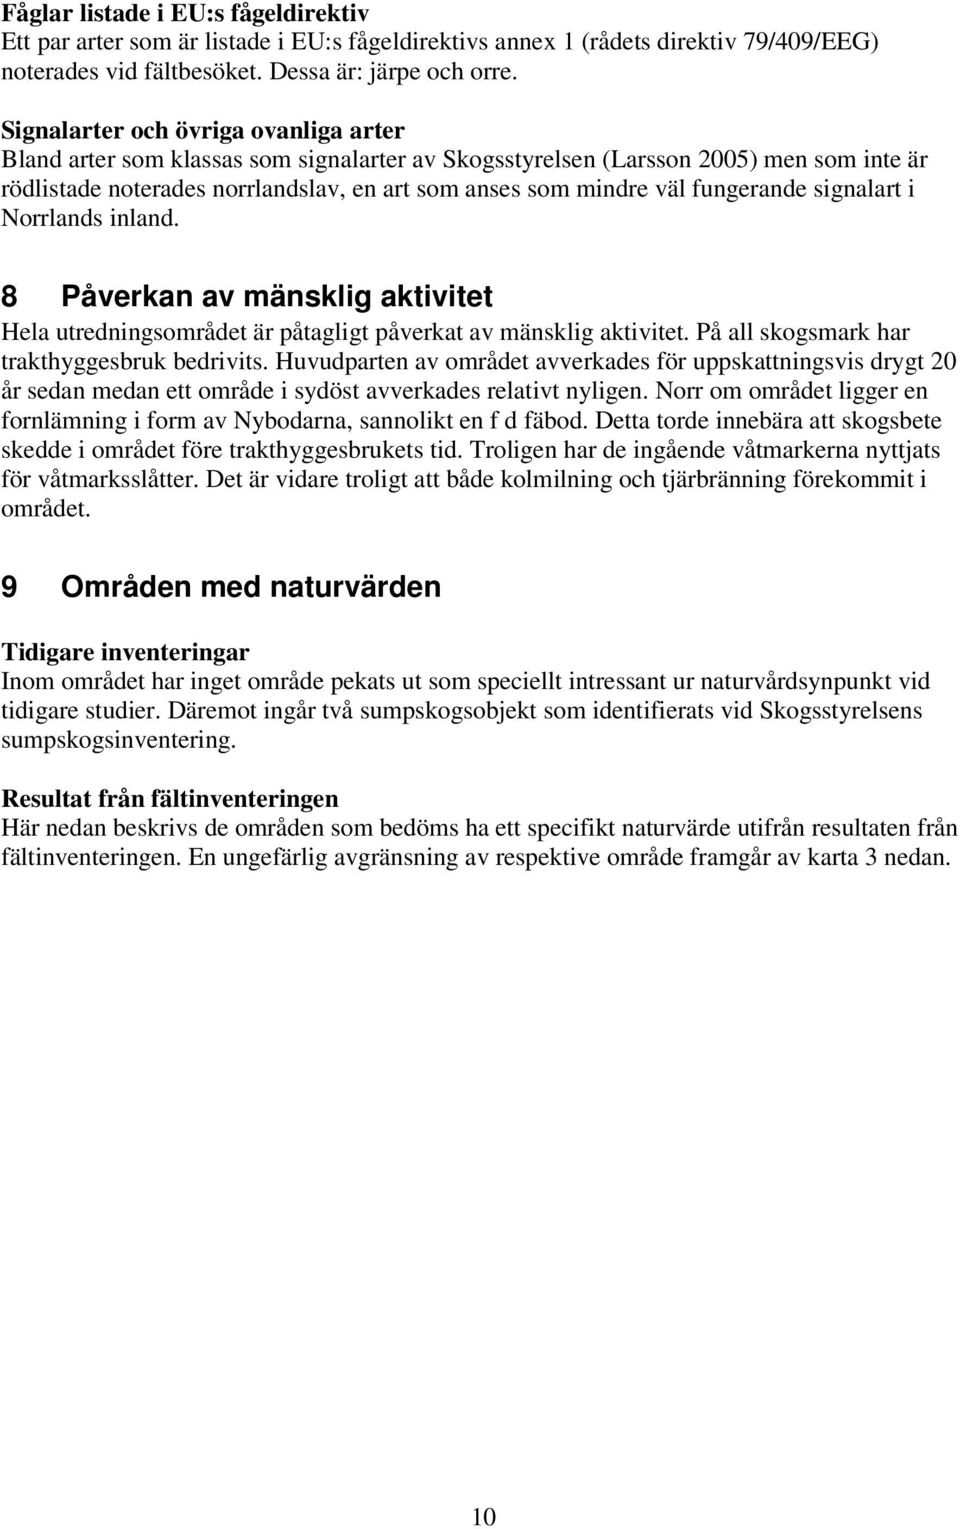 fungerande signalart i Norrlands inland. 8 Påverkan av mänsklig aktivitet Hela utredningsområdet är påtagligt påverkat av mänsklig aktivitet. På all skogsmark har trakthyggesbruk bedrivits.